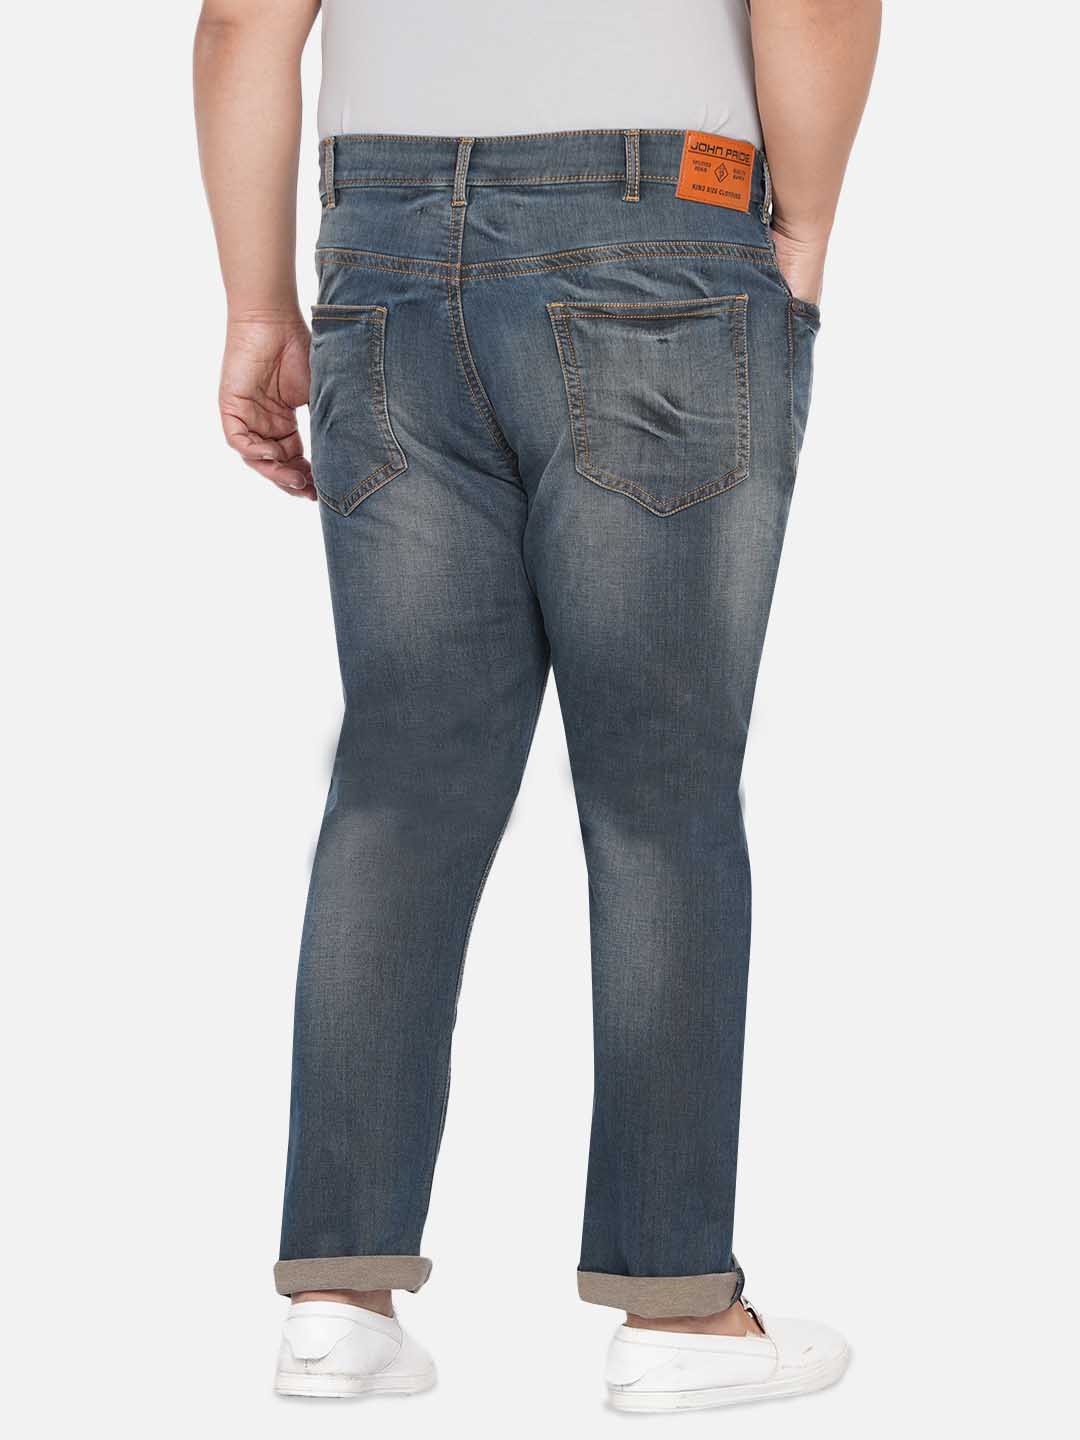 bottomwear/jeans/JPJ12232/jpj12232-5.jpg